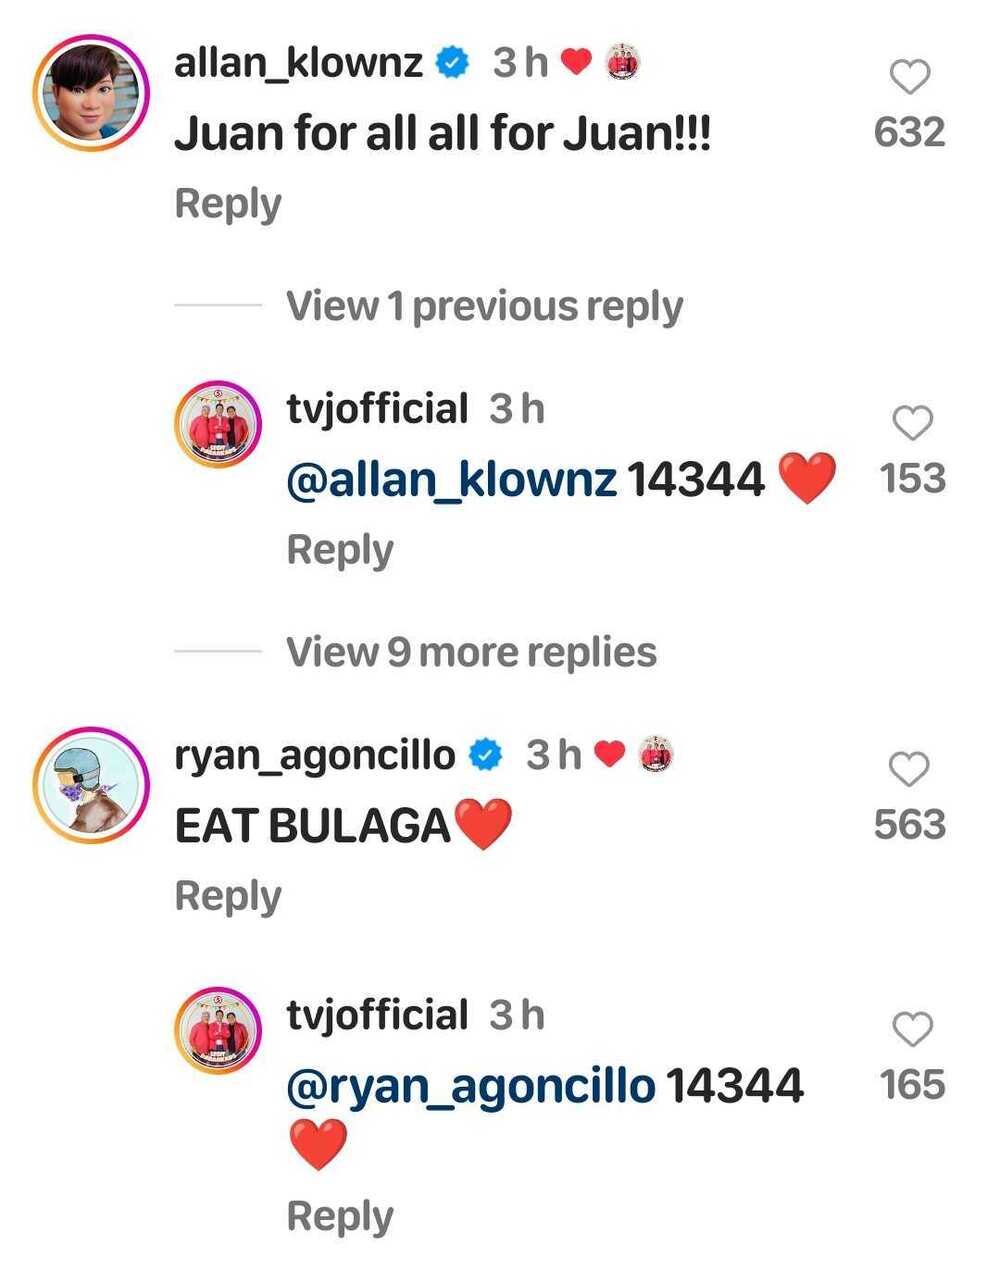 Allan K at co-hosts, positibong nag-react sa new post ng TVJ kung saan binanggit ang “Eat Bulaga”